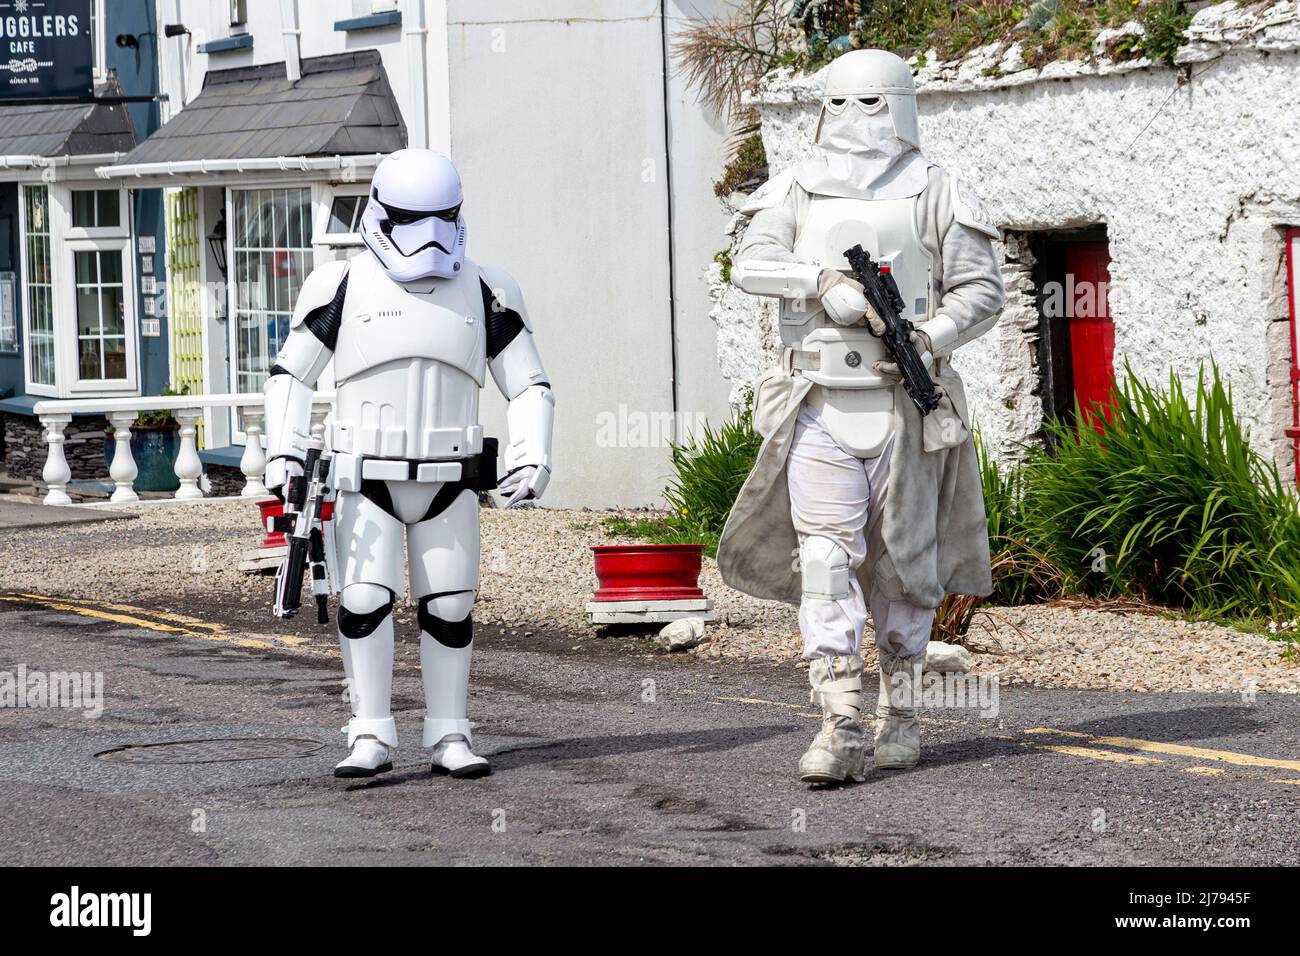 Personajes de Star Wars en mayo del 4th Festival en Portmagee, Condado de Kerry Irlanda Foto de stock